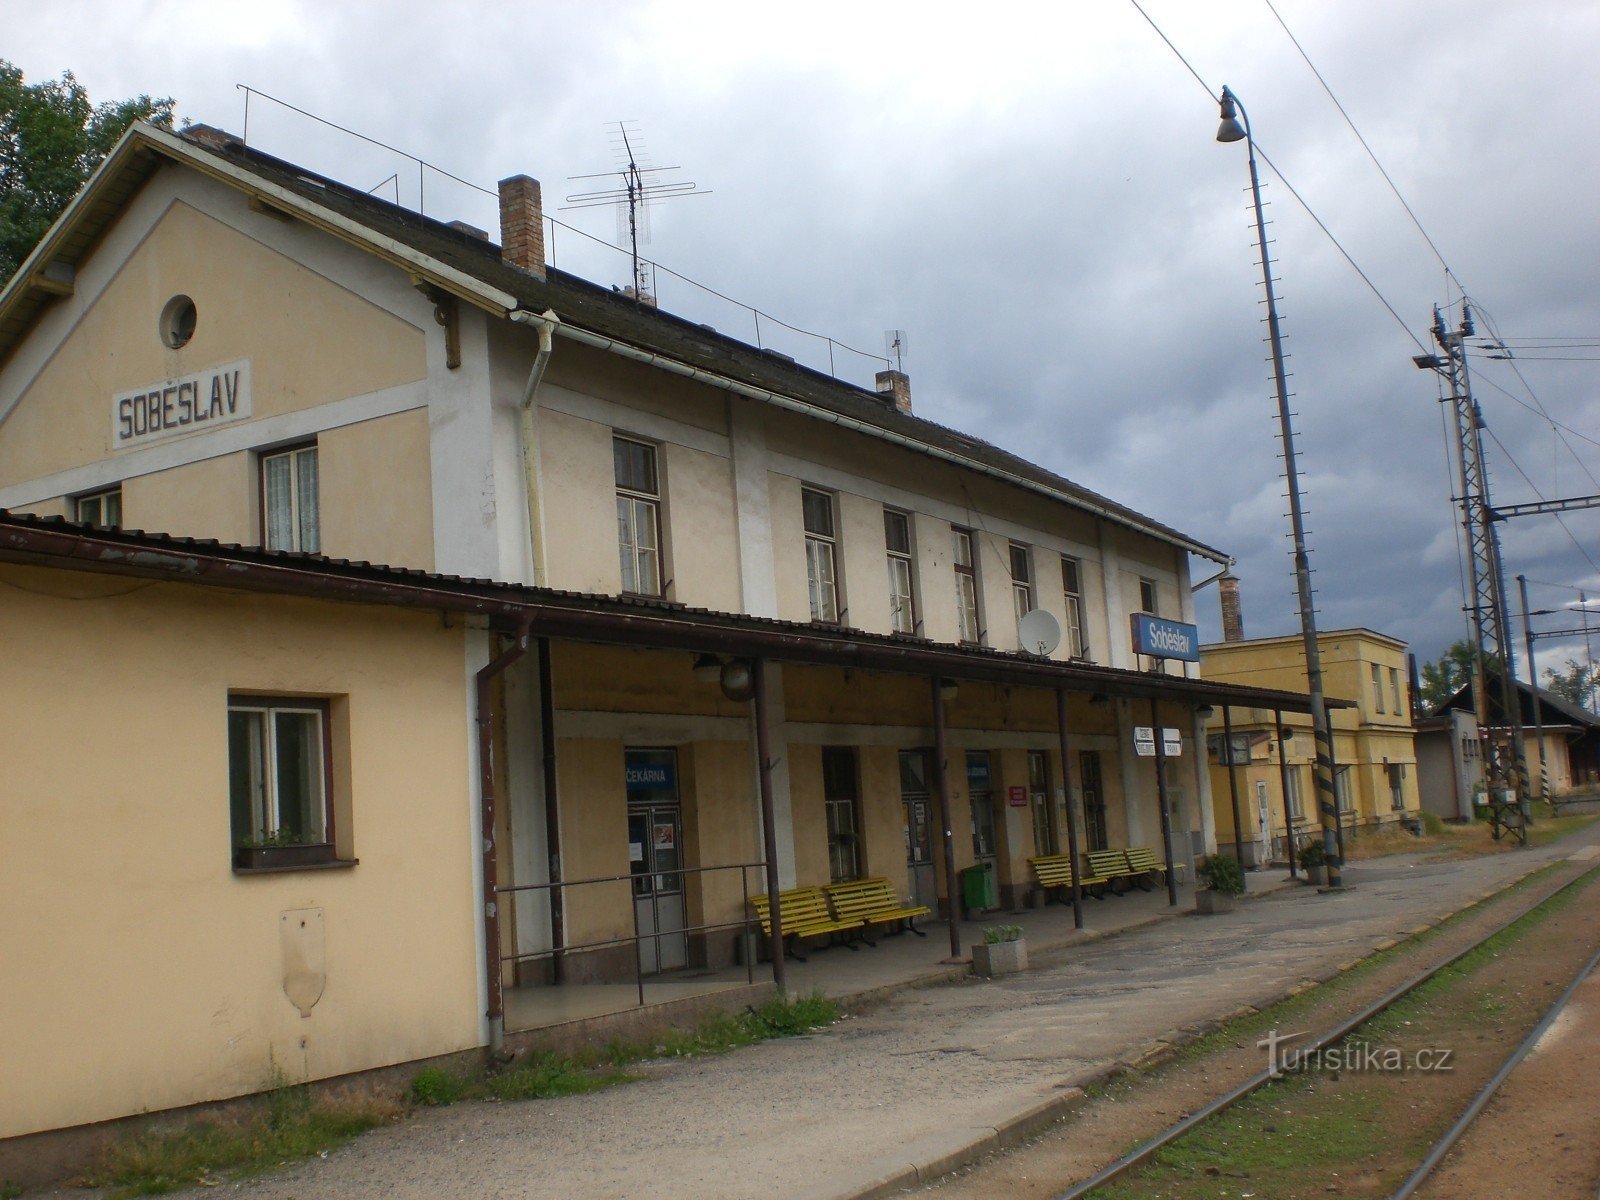 Soběslav - stazione ferroviaria